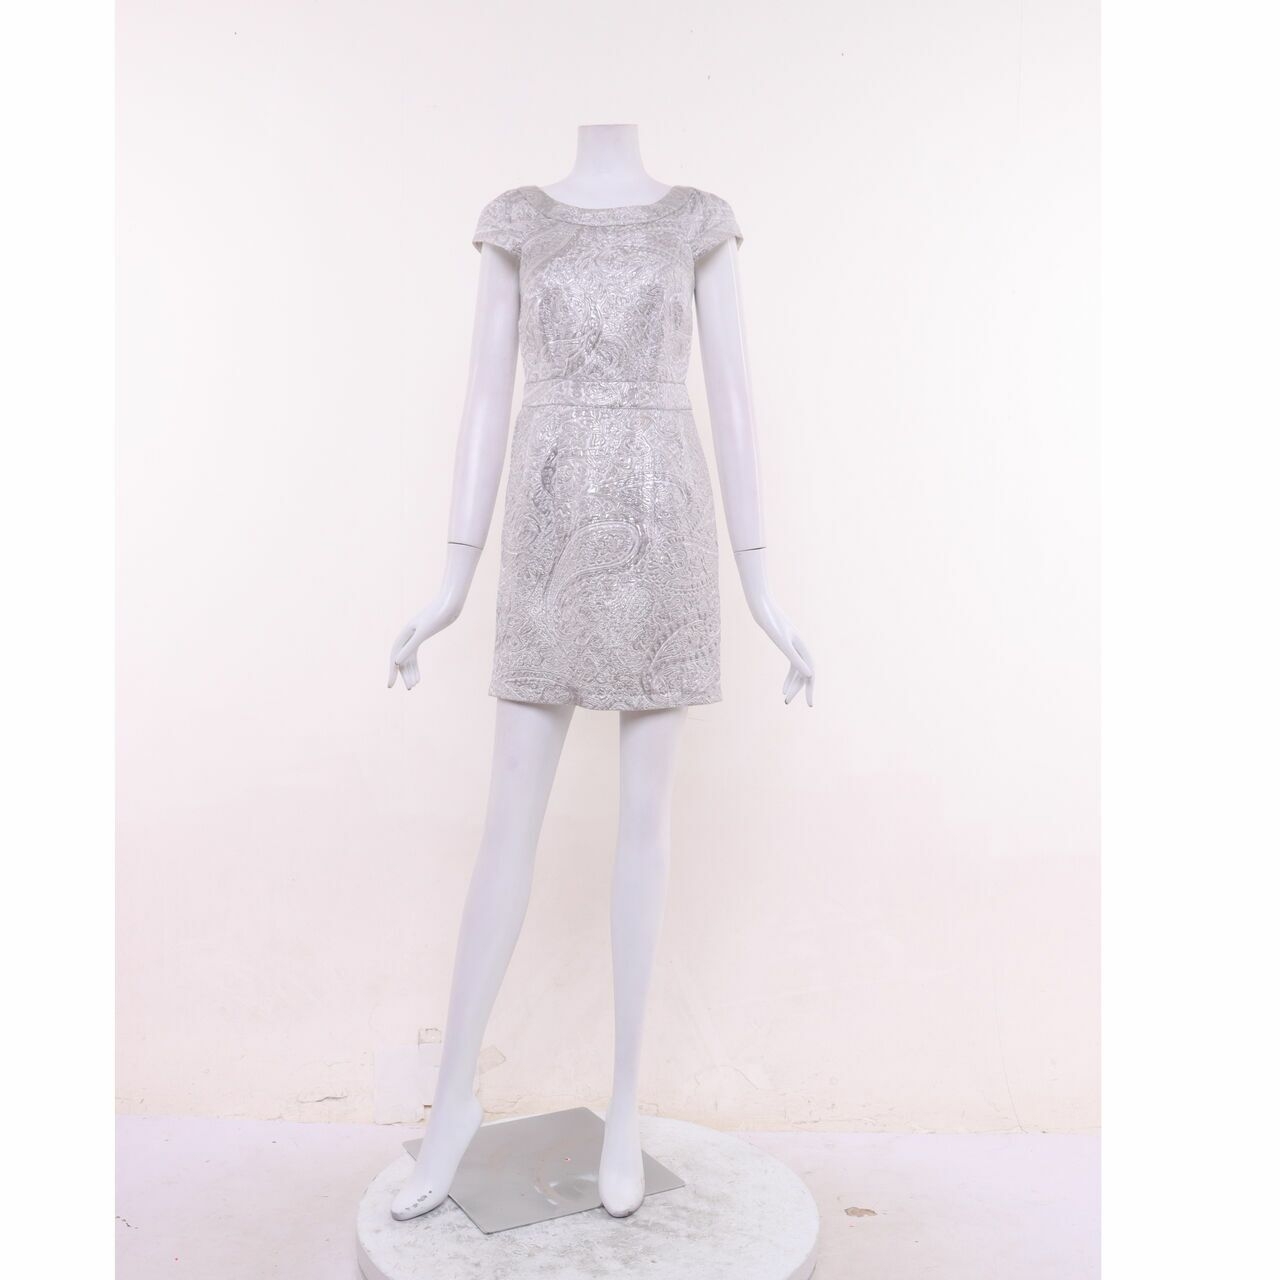 Sportsgirl Silver Mini Dress